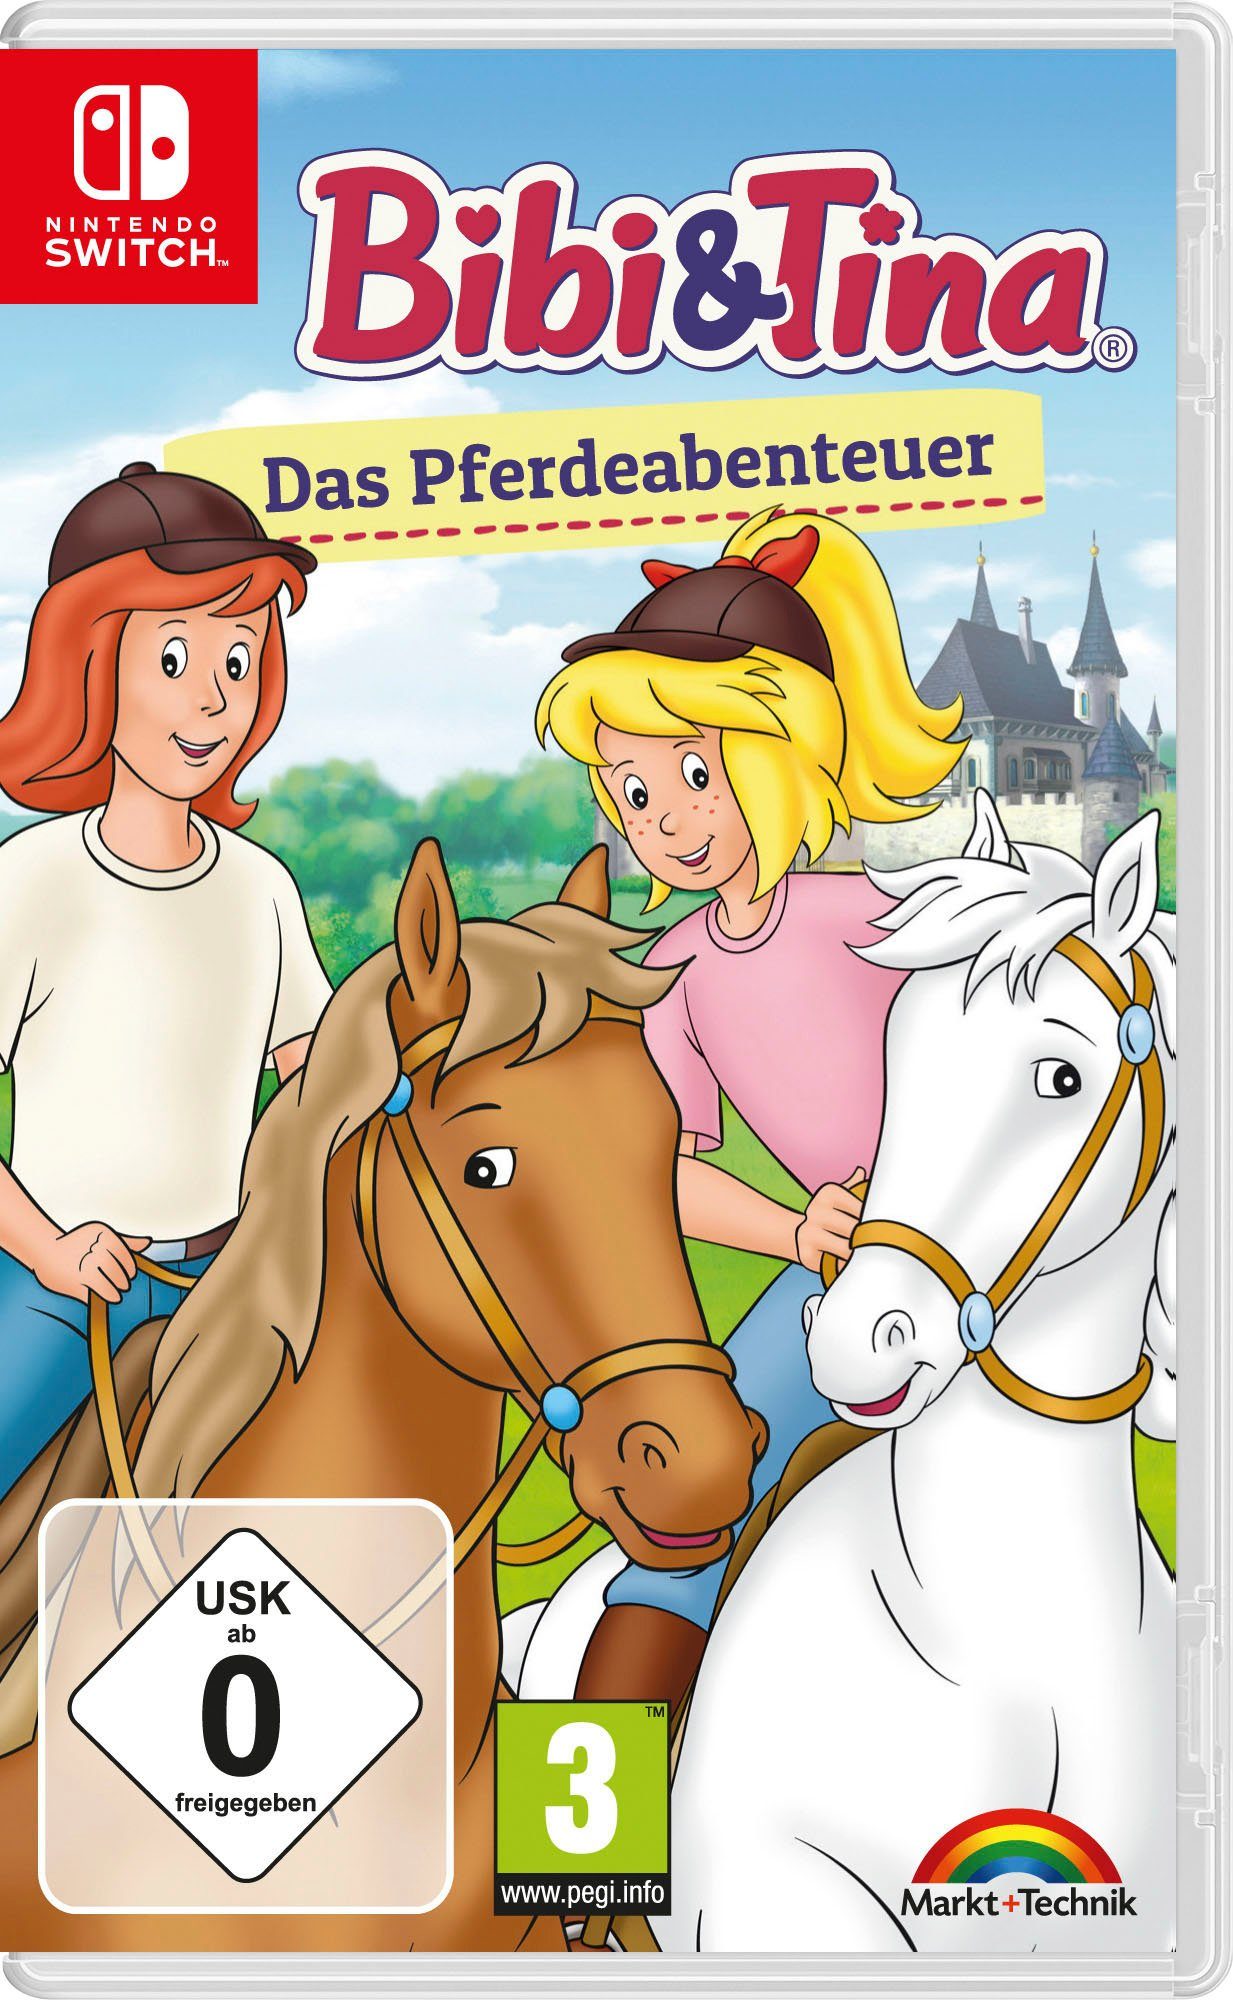 Schmücken und & Switch, Bibi Tina: Striegeln, Spiele Pferdeabenteuer Das tolle Pferde-Minigames: vier Nintendo Füttern Hufpflege,